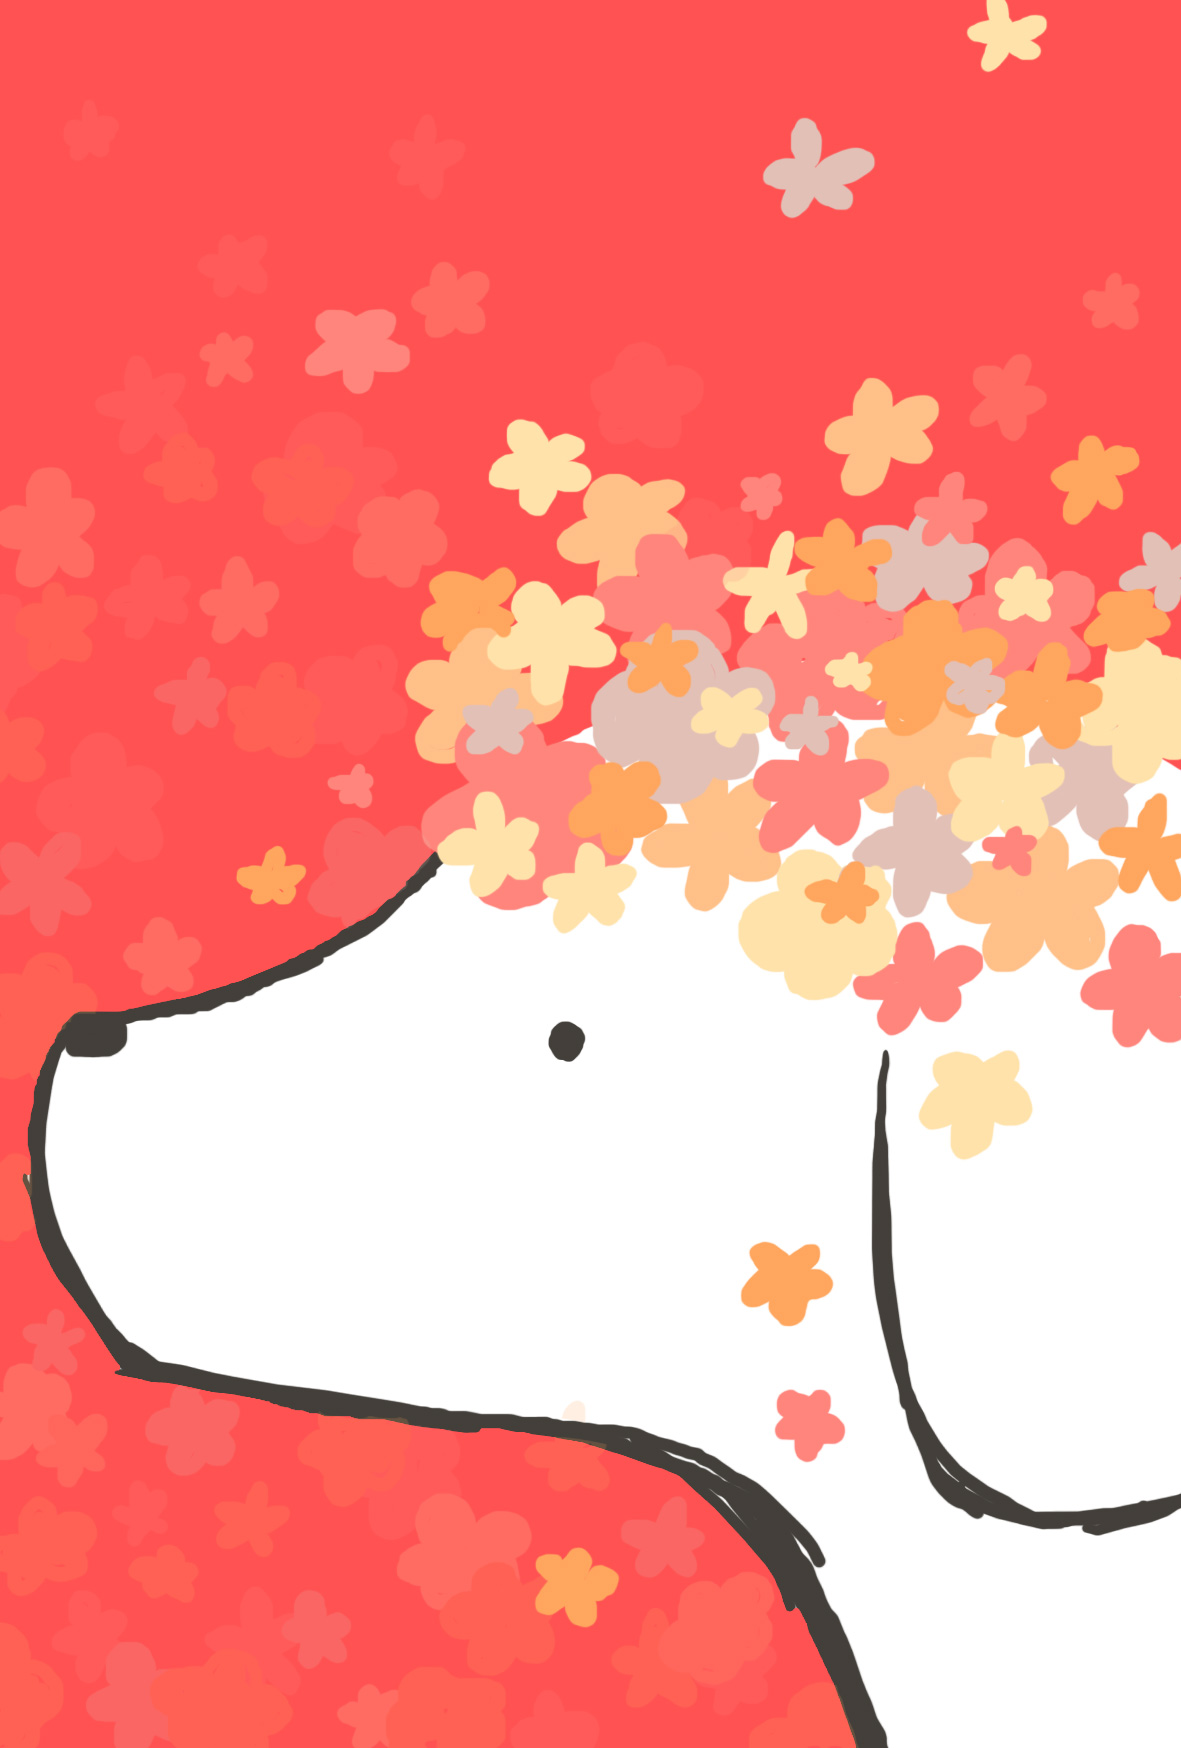 戌年年賀状 可愛いお花と白い犬